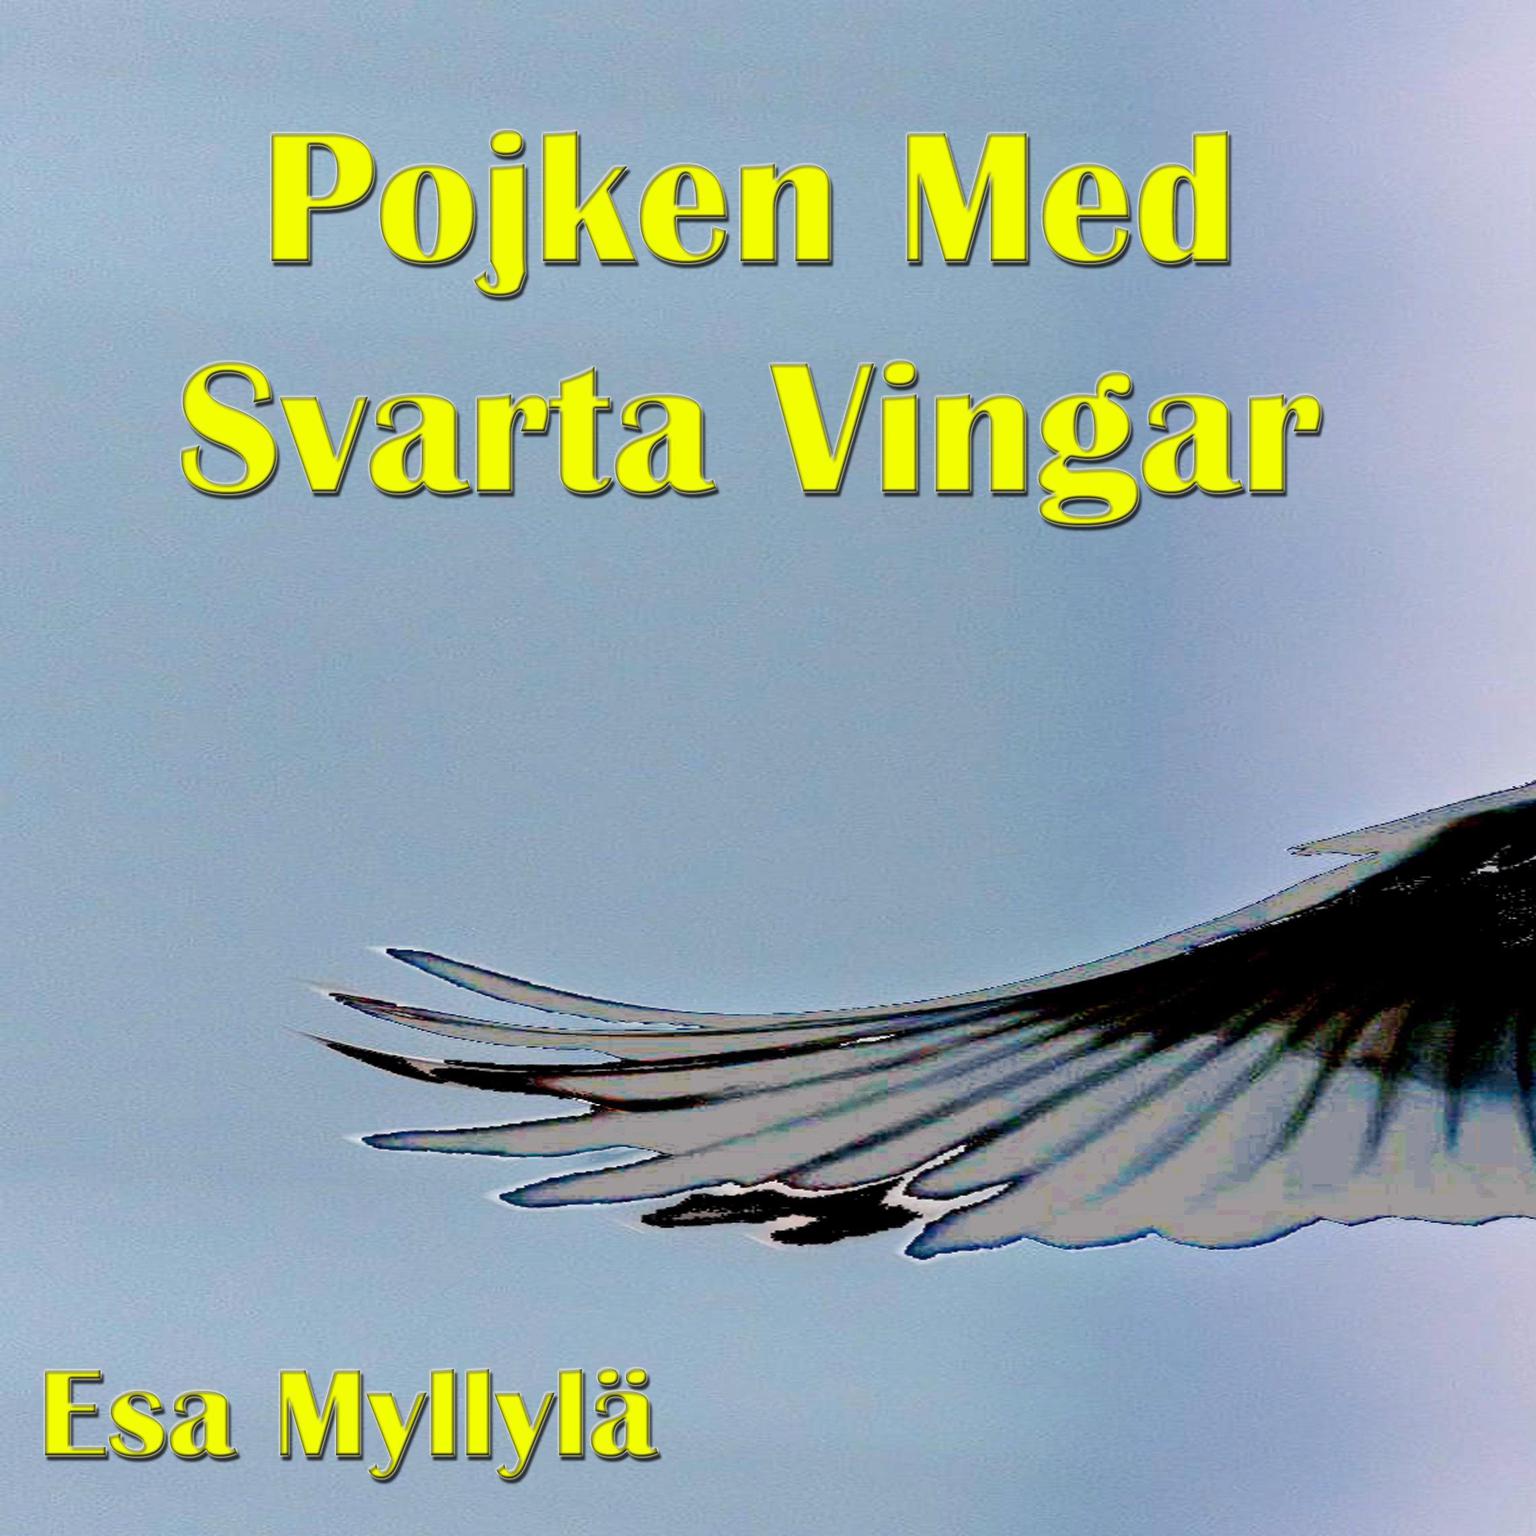 Pojken med svarta vingar Audiobook, by Esa Myllylä